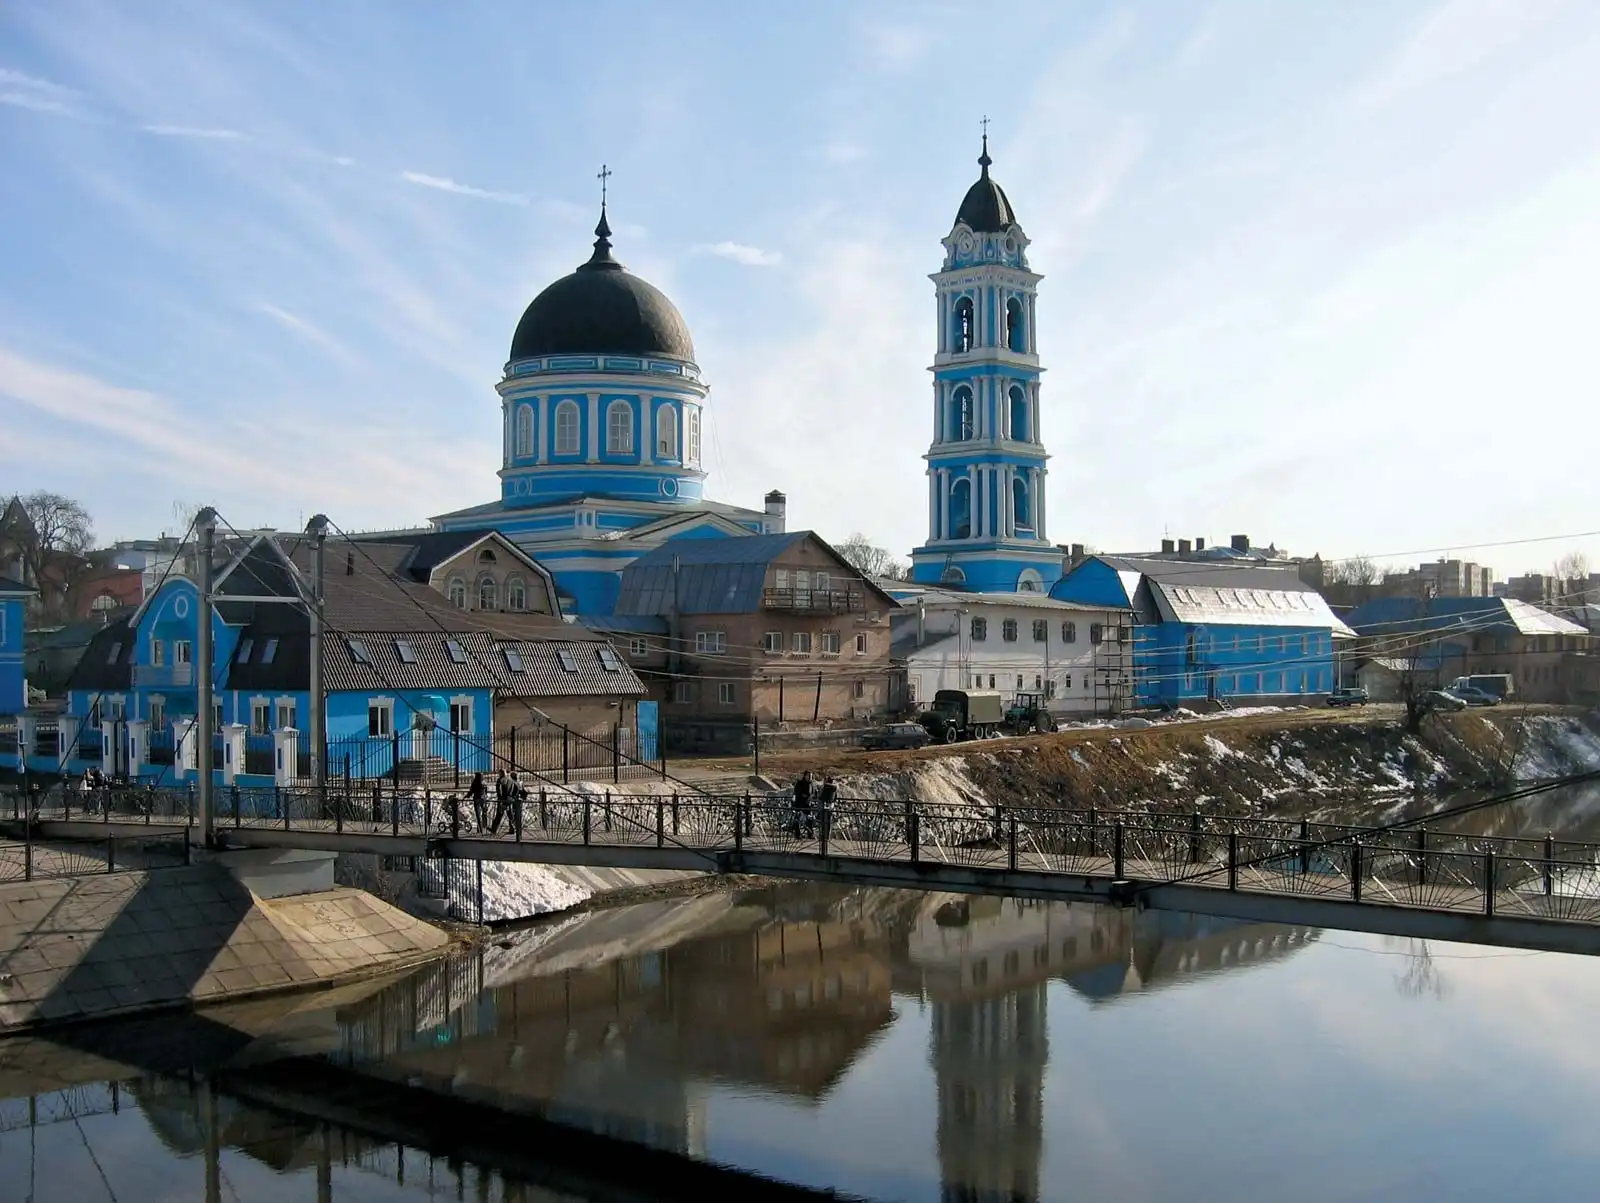 Noginsk tourism